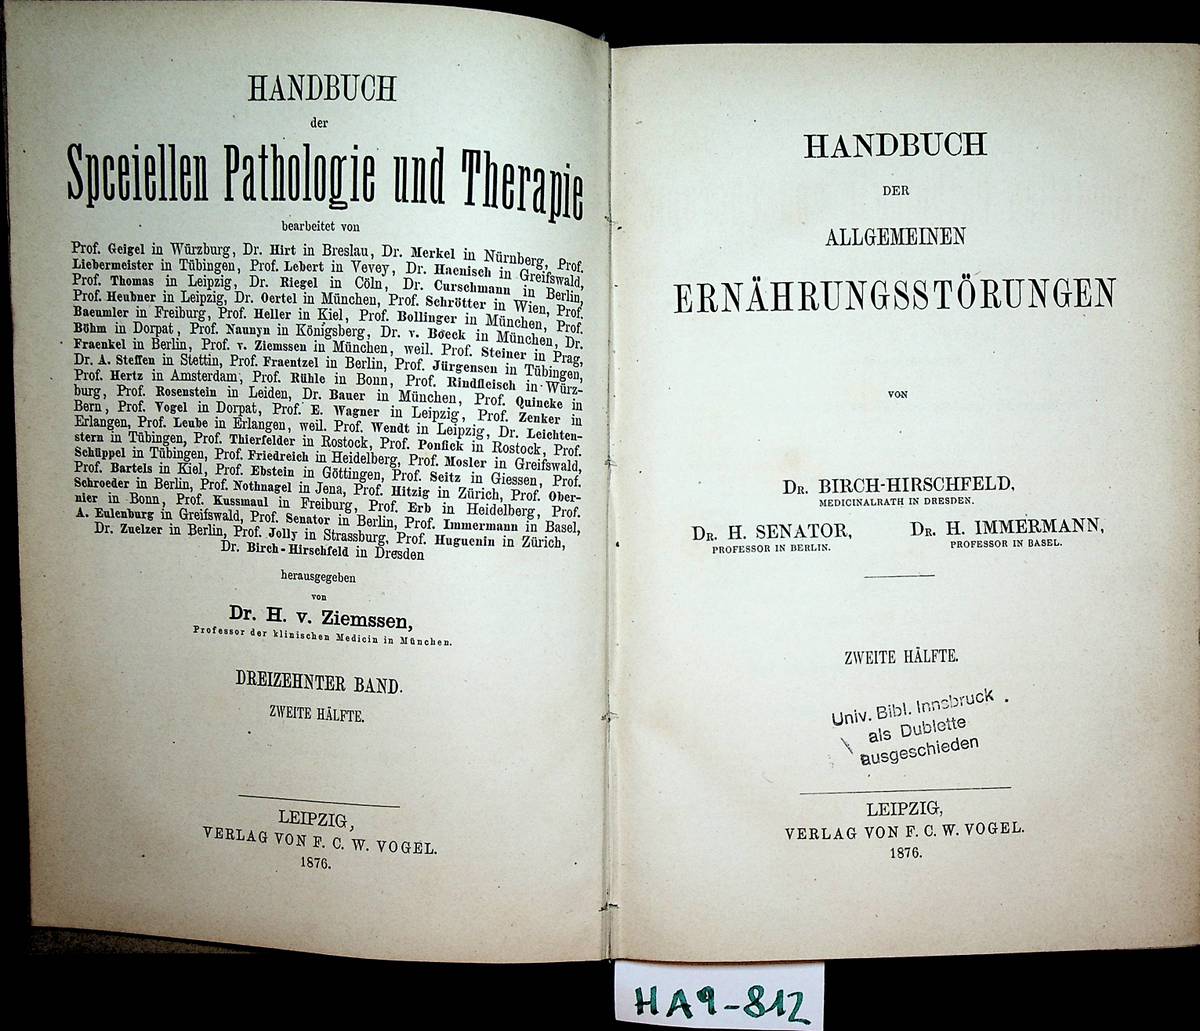 Birch-Hirschfeld, Felix V. ; Senator, Hermann ; Immermann, Hermann:  Handbuch  der allgemeinen  Ernährungsstörungen. (= Handbuch der speciellen Pathologie und Therapie / hrsg. von H. v. Ziemssen 13. Band, 2. Hälfte) 